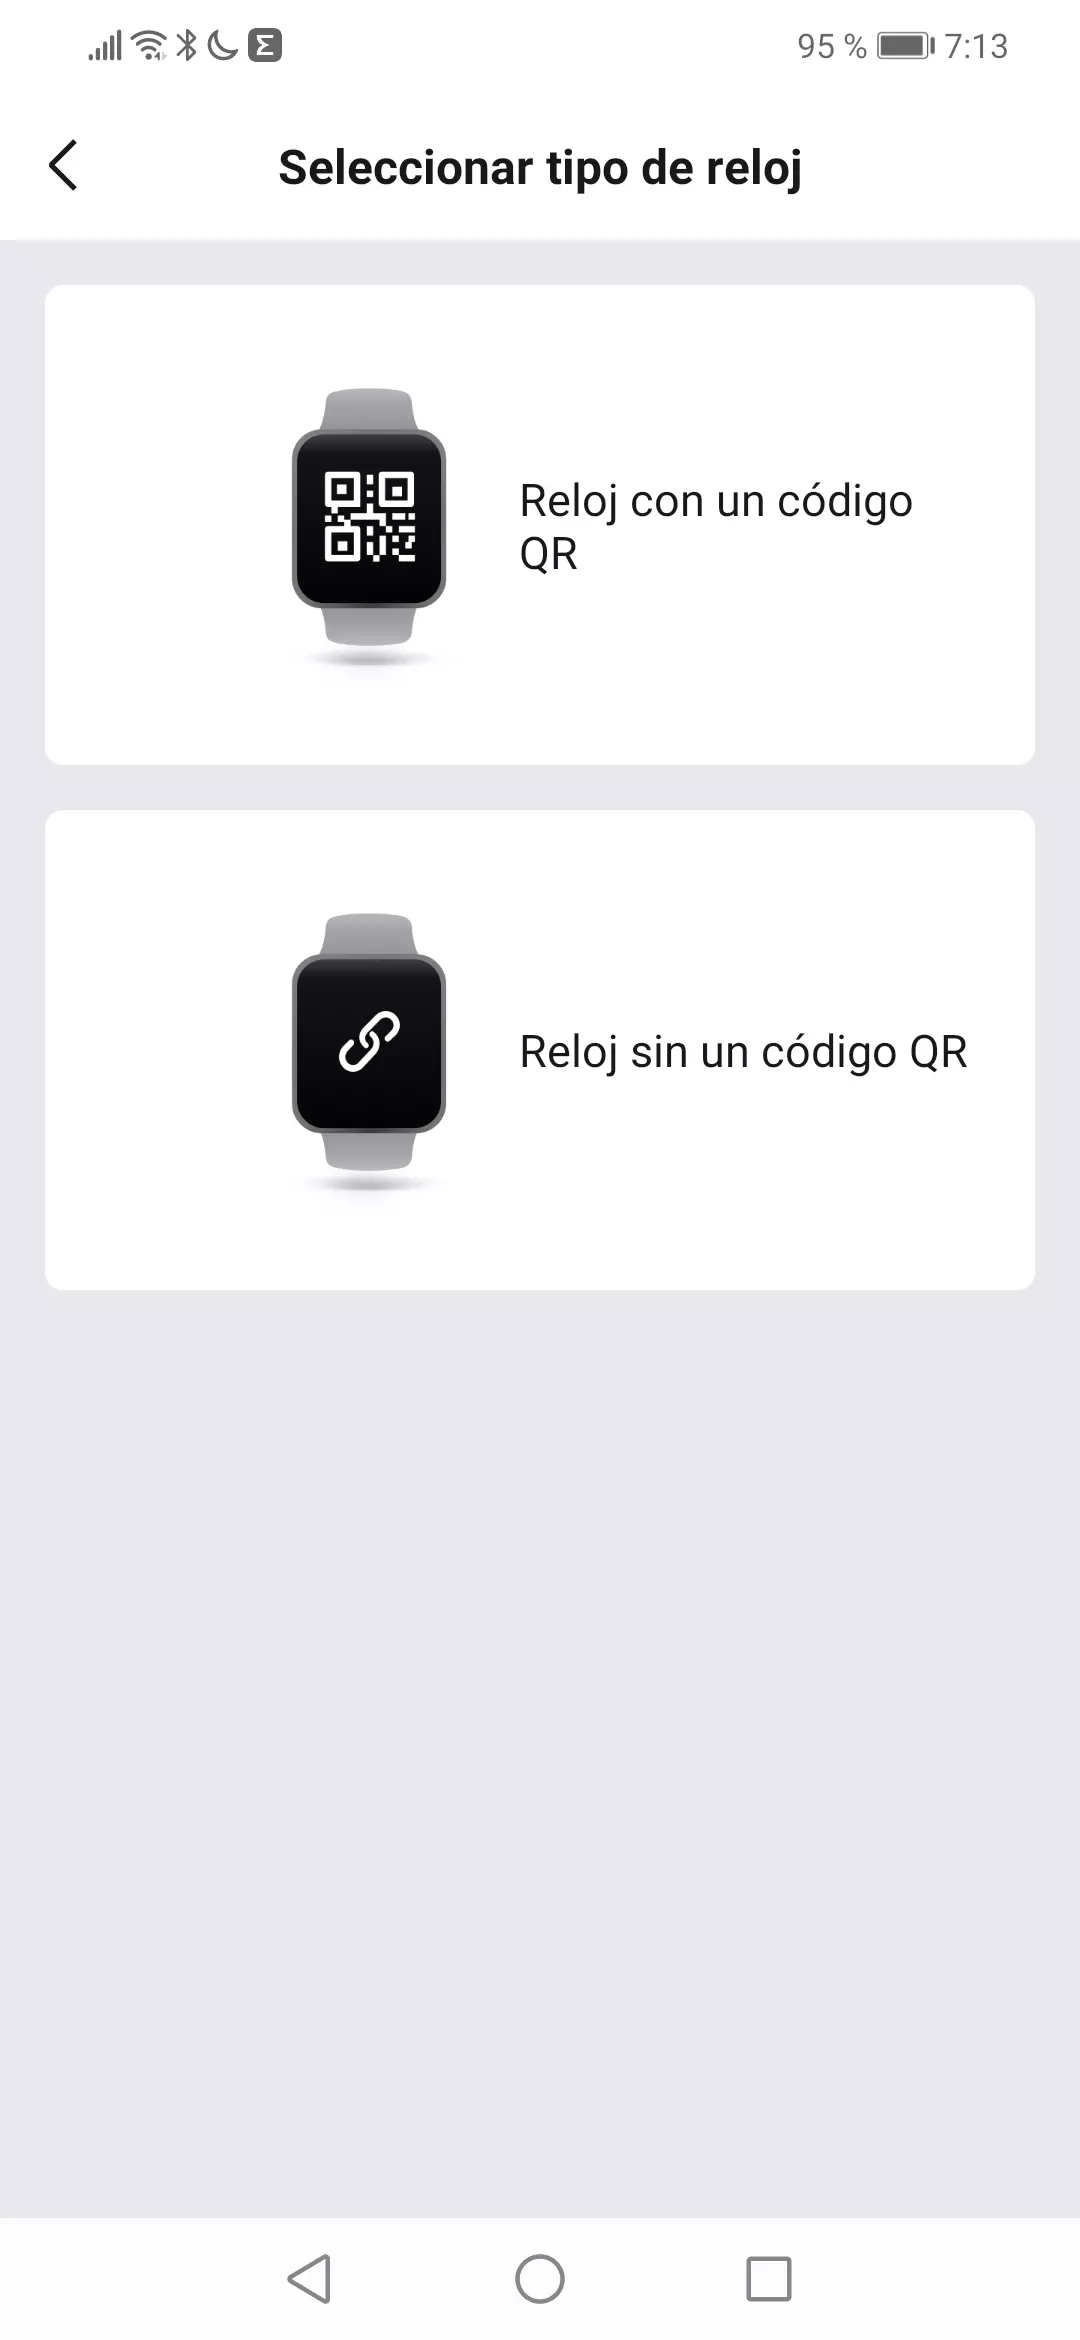 Selección de la forma de agregar el smartwatch a Zepp